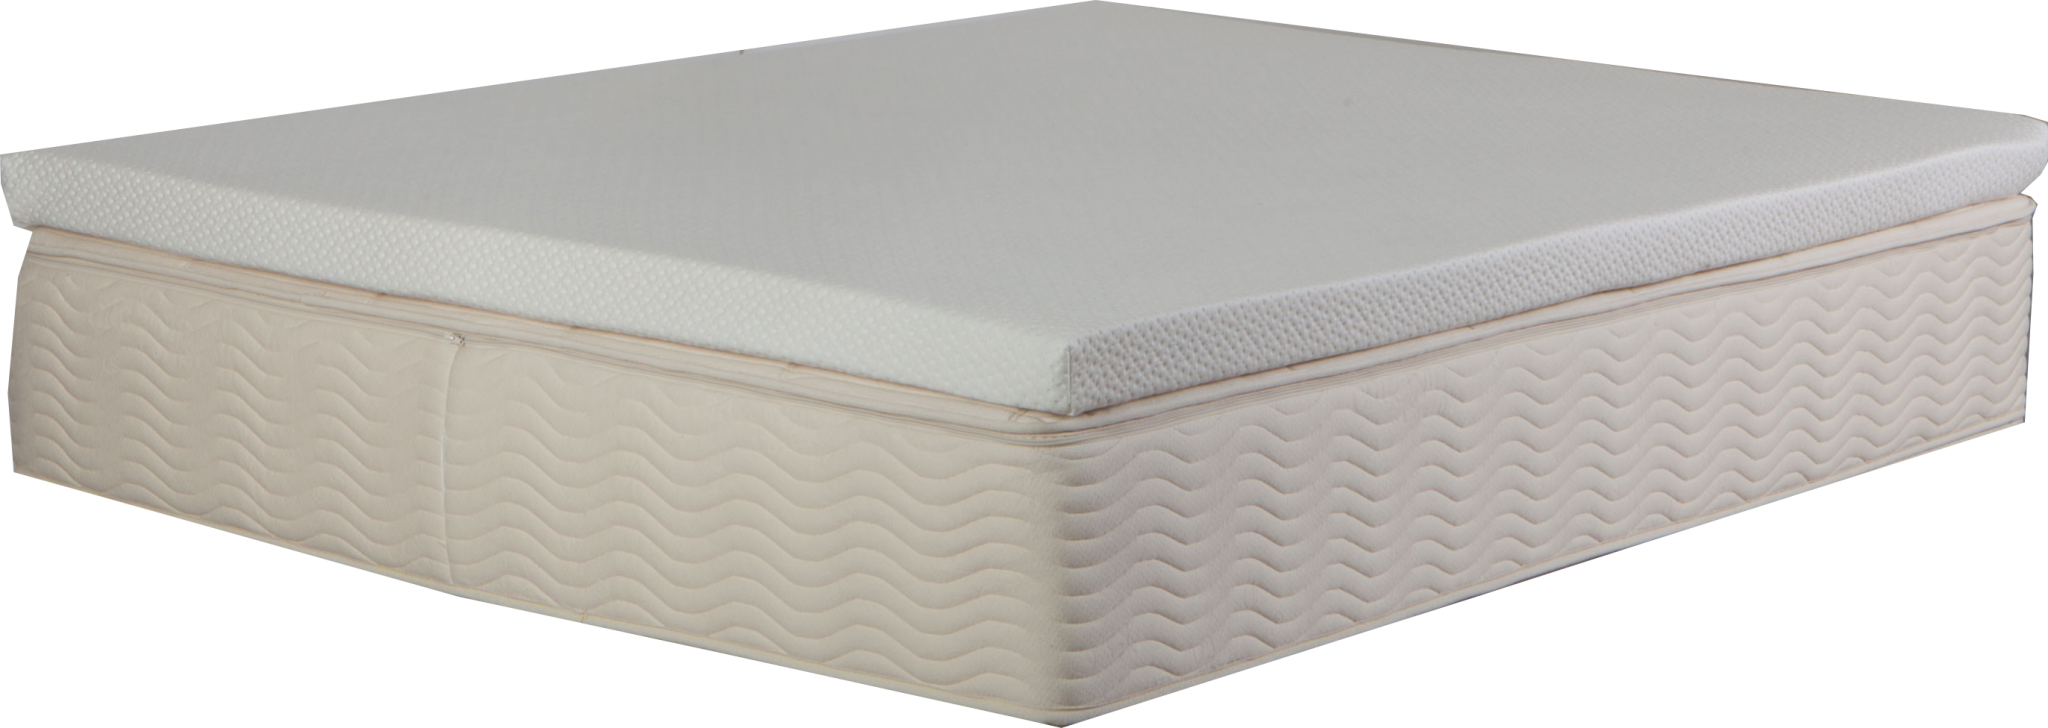 custom size latex mattress topper